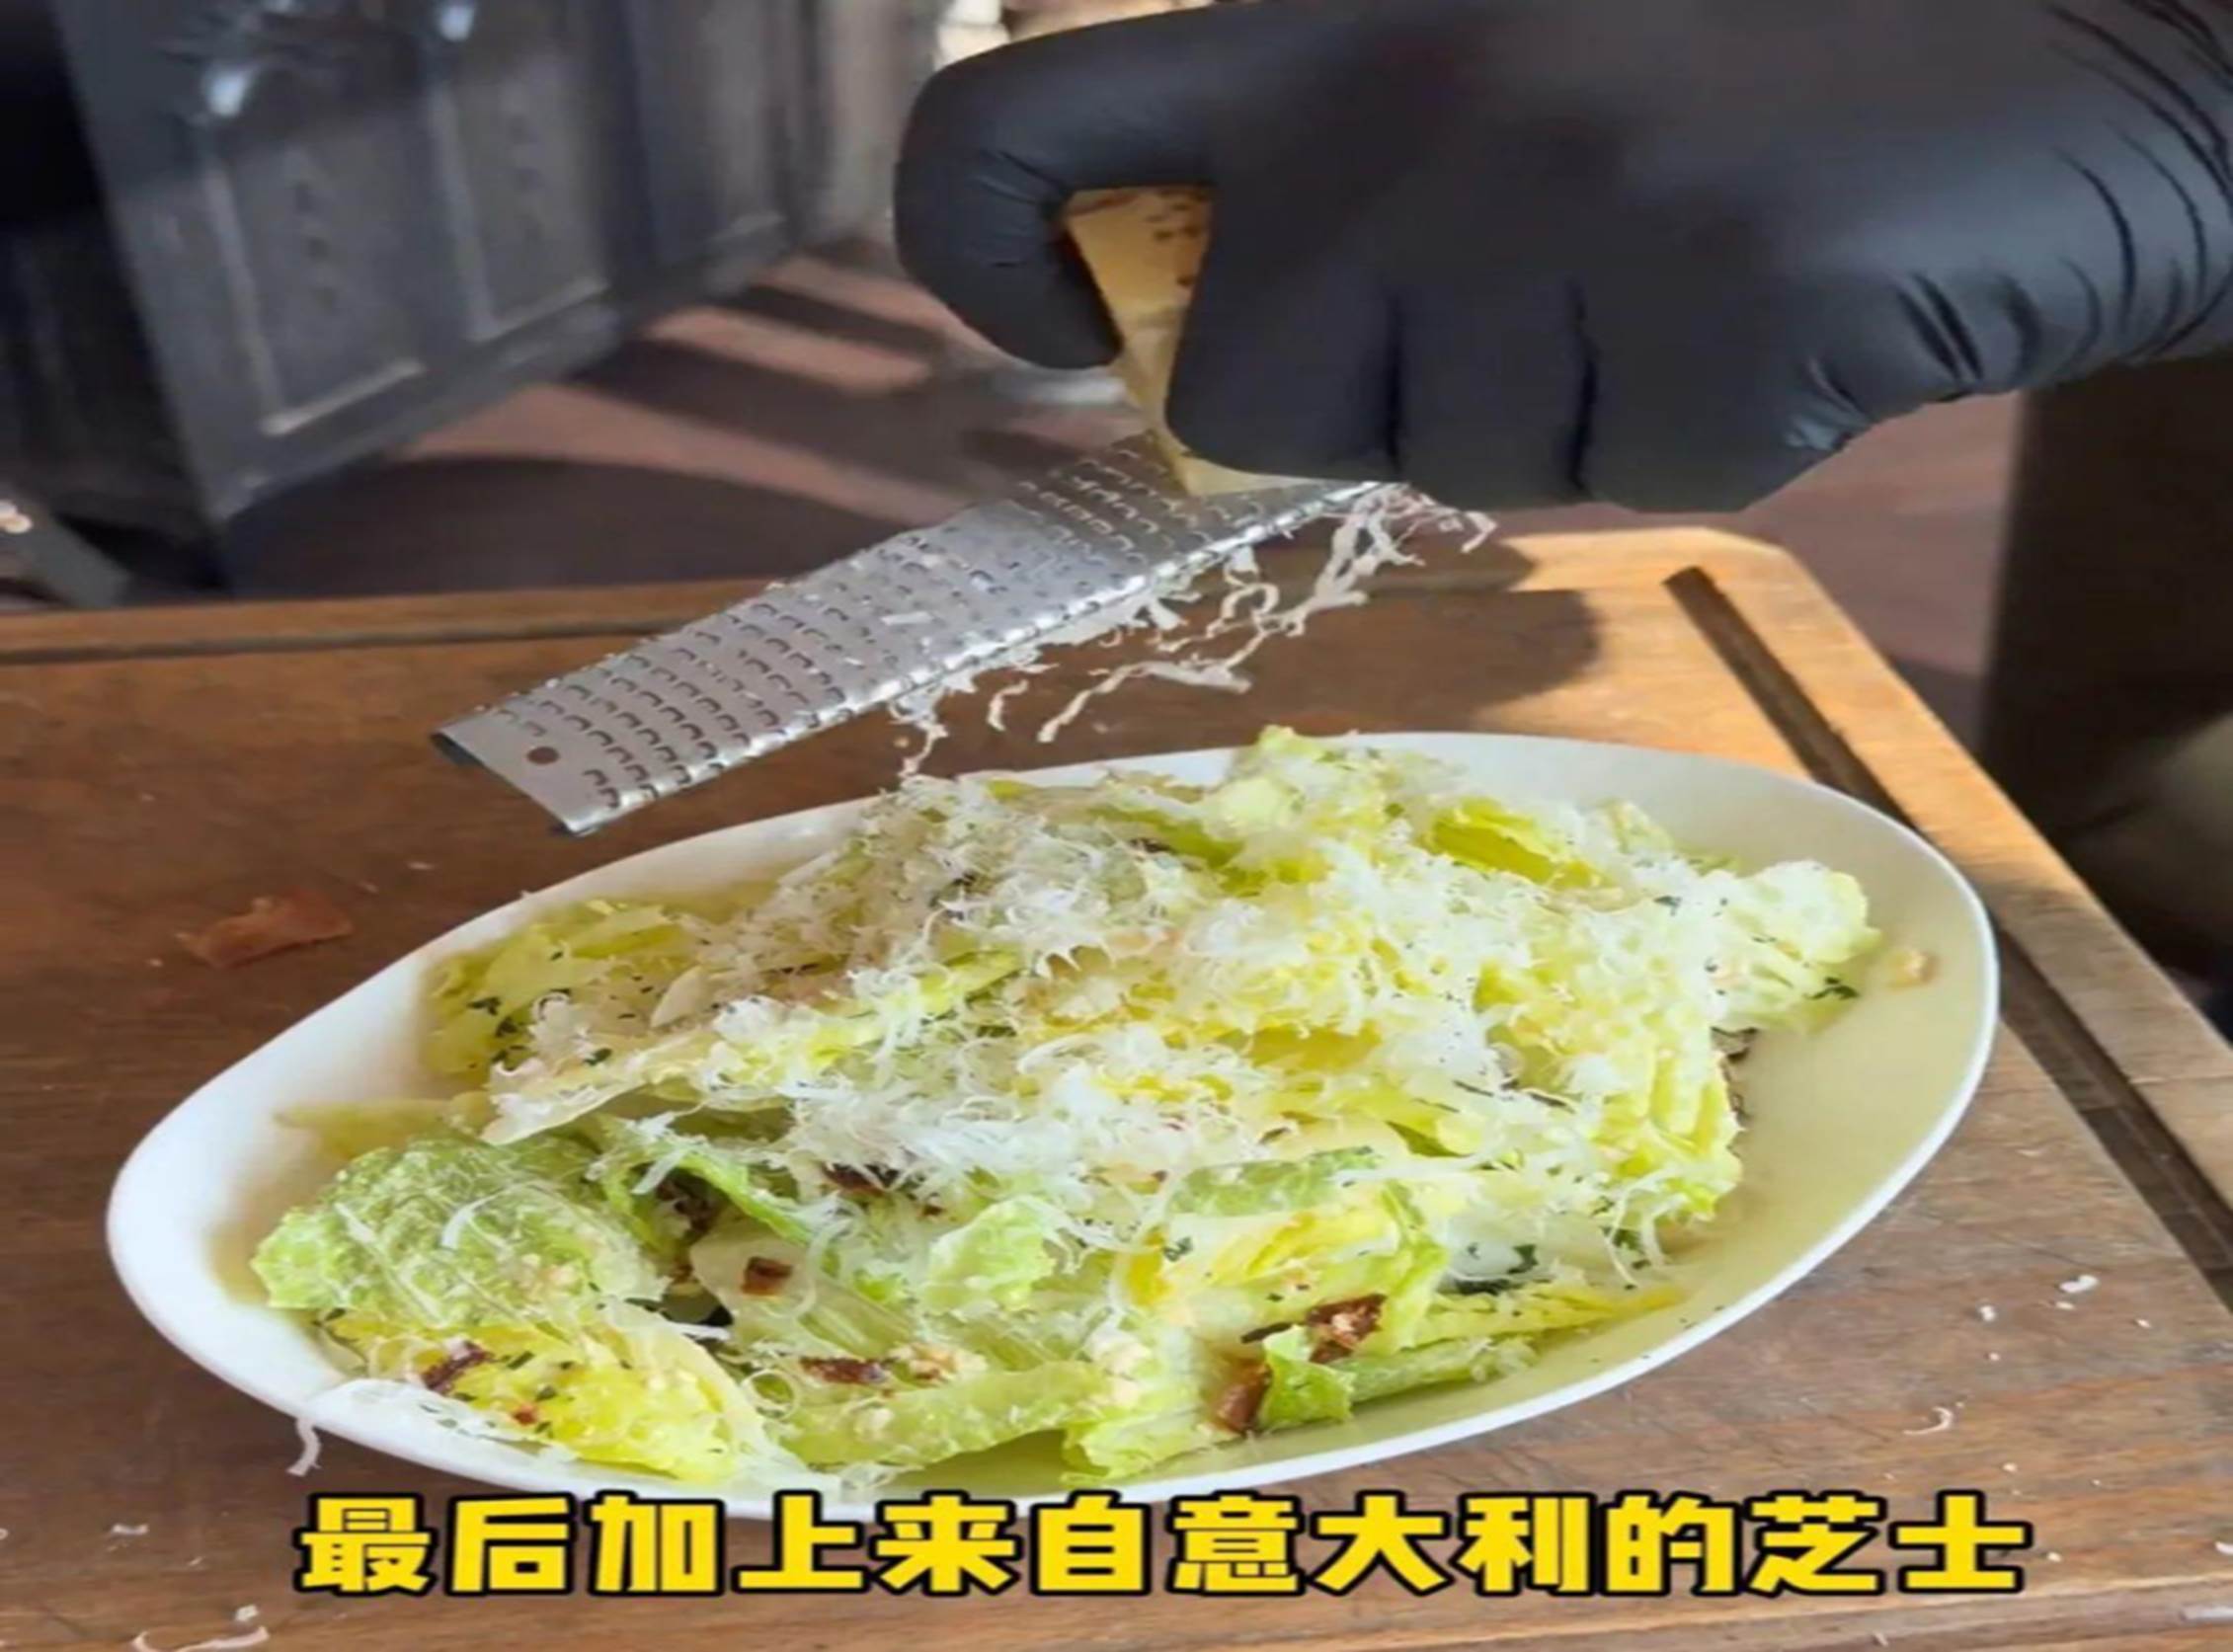 Cơm nhà giàu Thượng Hải gây tranh cãi với giá như trên trời: Có gì trong món salad hơn 700.000 đồng và đĩa bánh sừng bò bé như ngón tay?-5